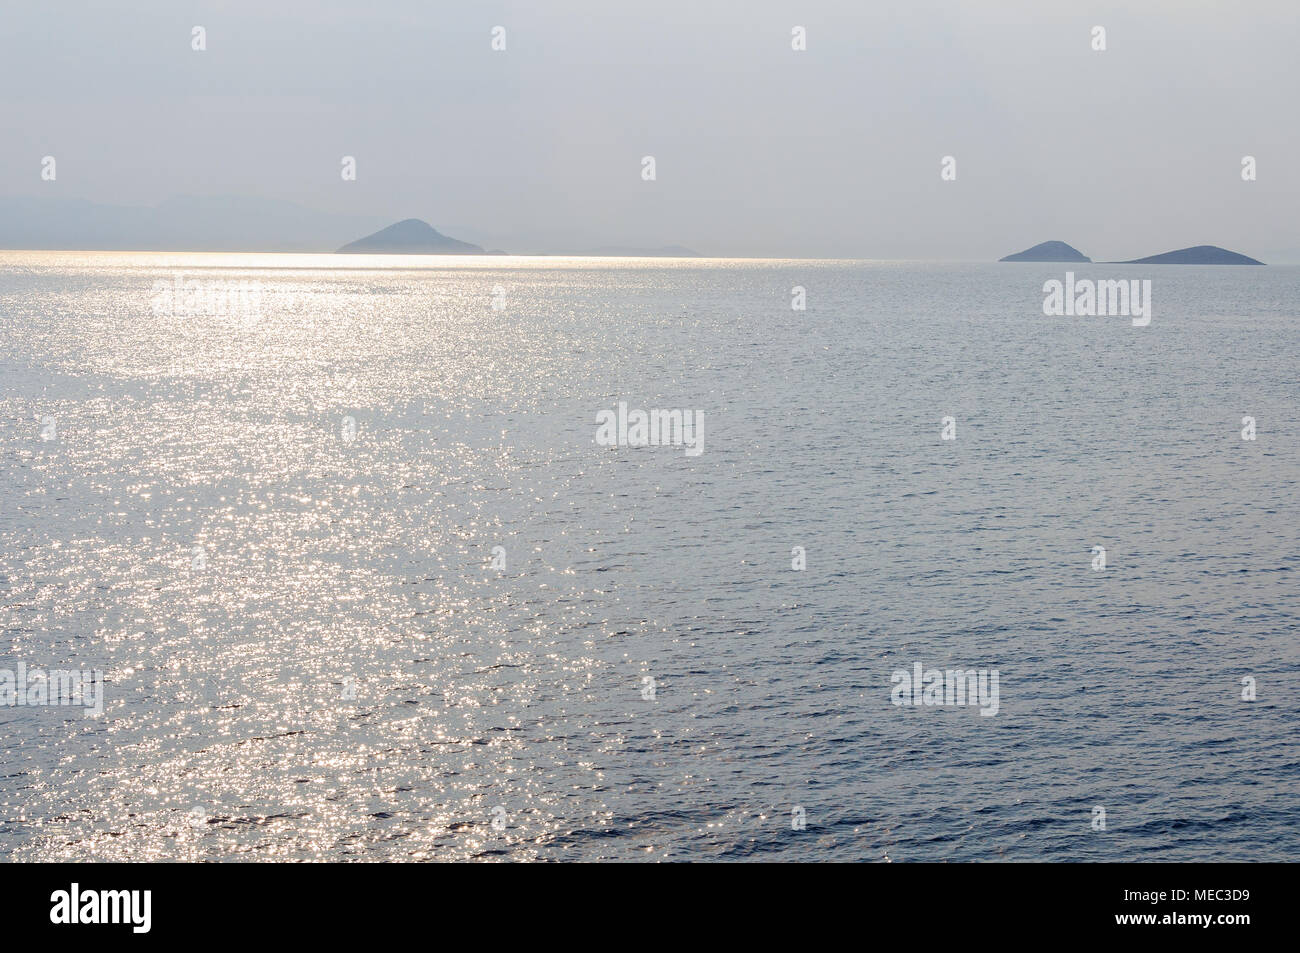 Islands in the Aegean Sea - Saronic Gulf, Greece Stock Photo